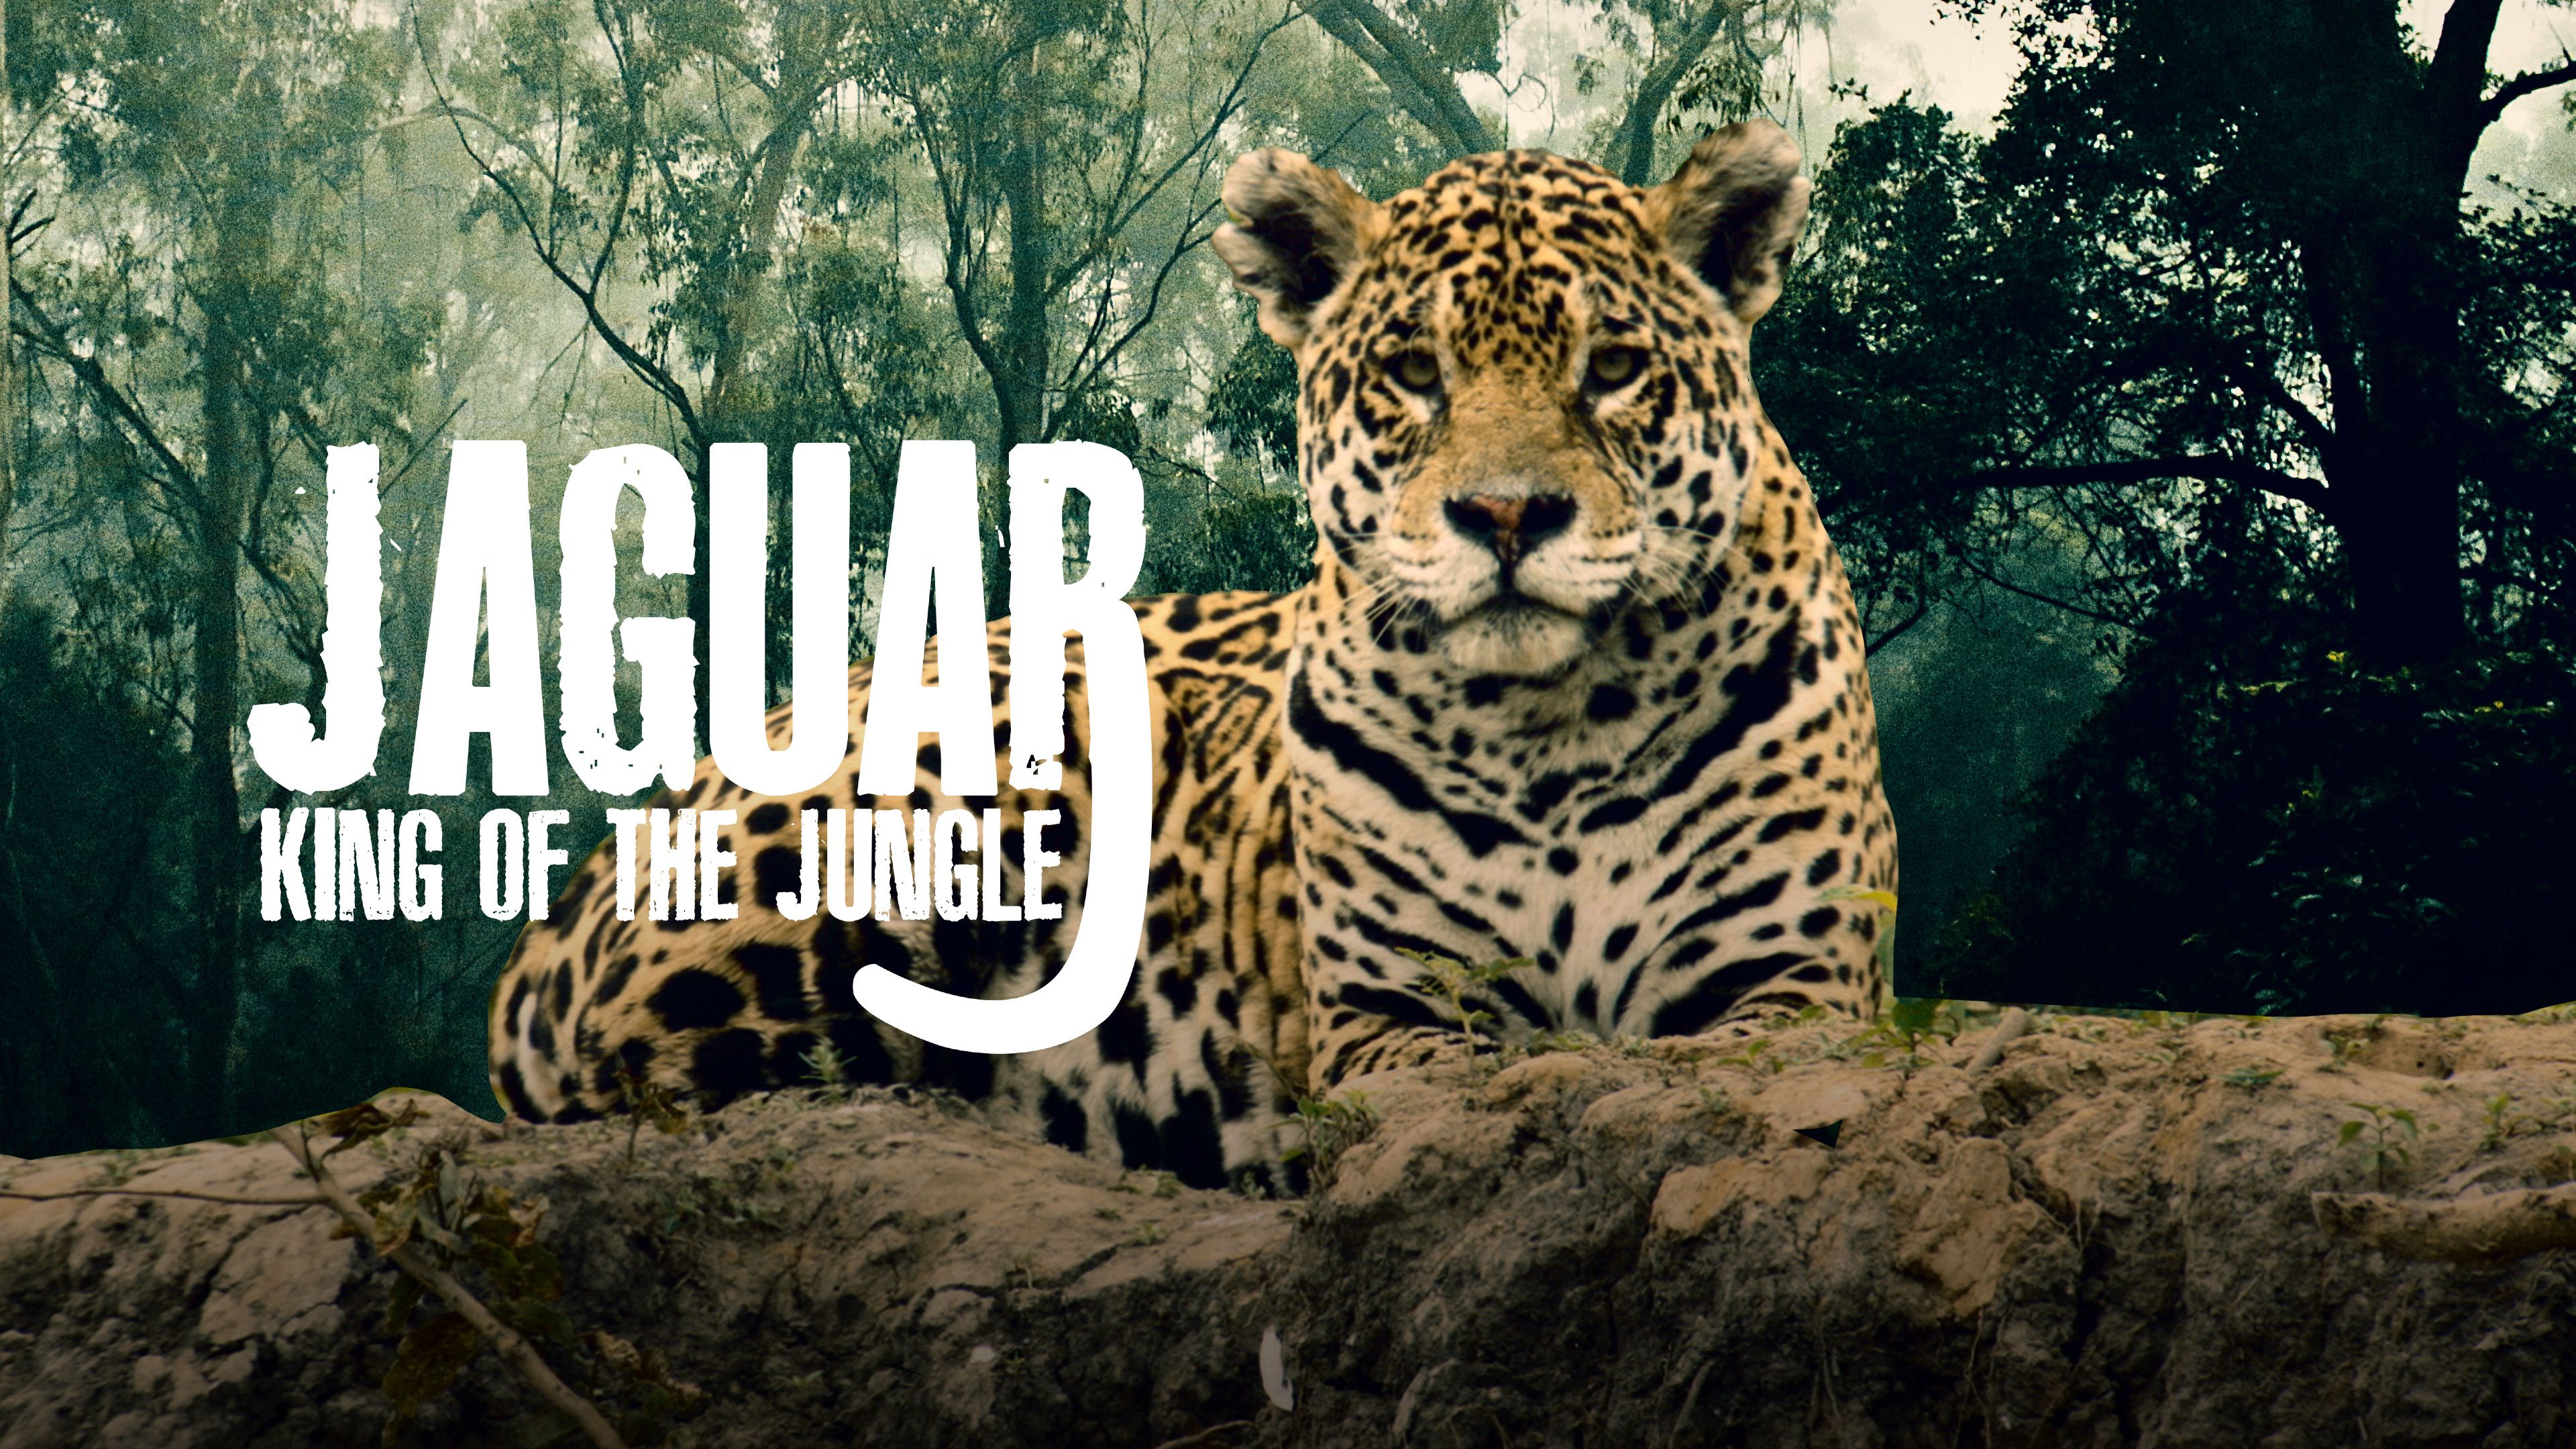 Jaguar: King of the Jungle